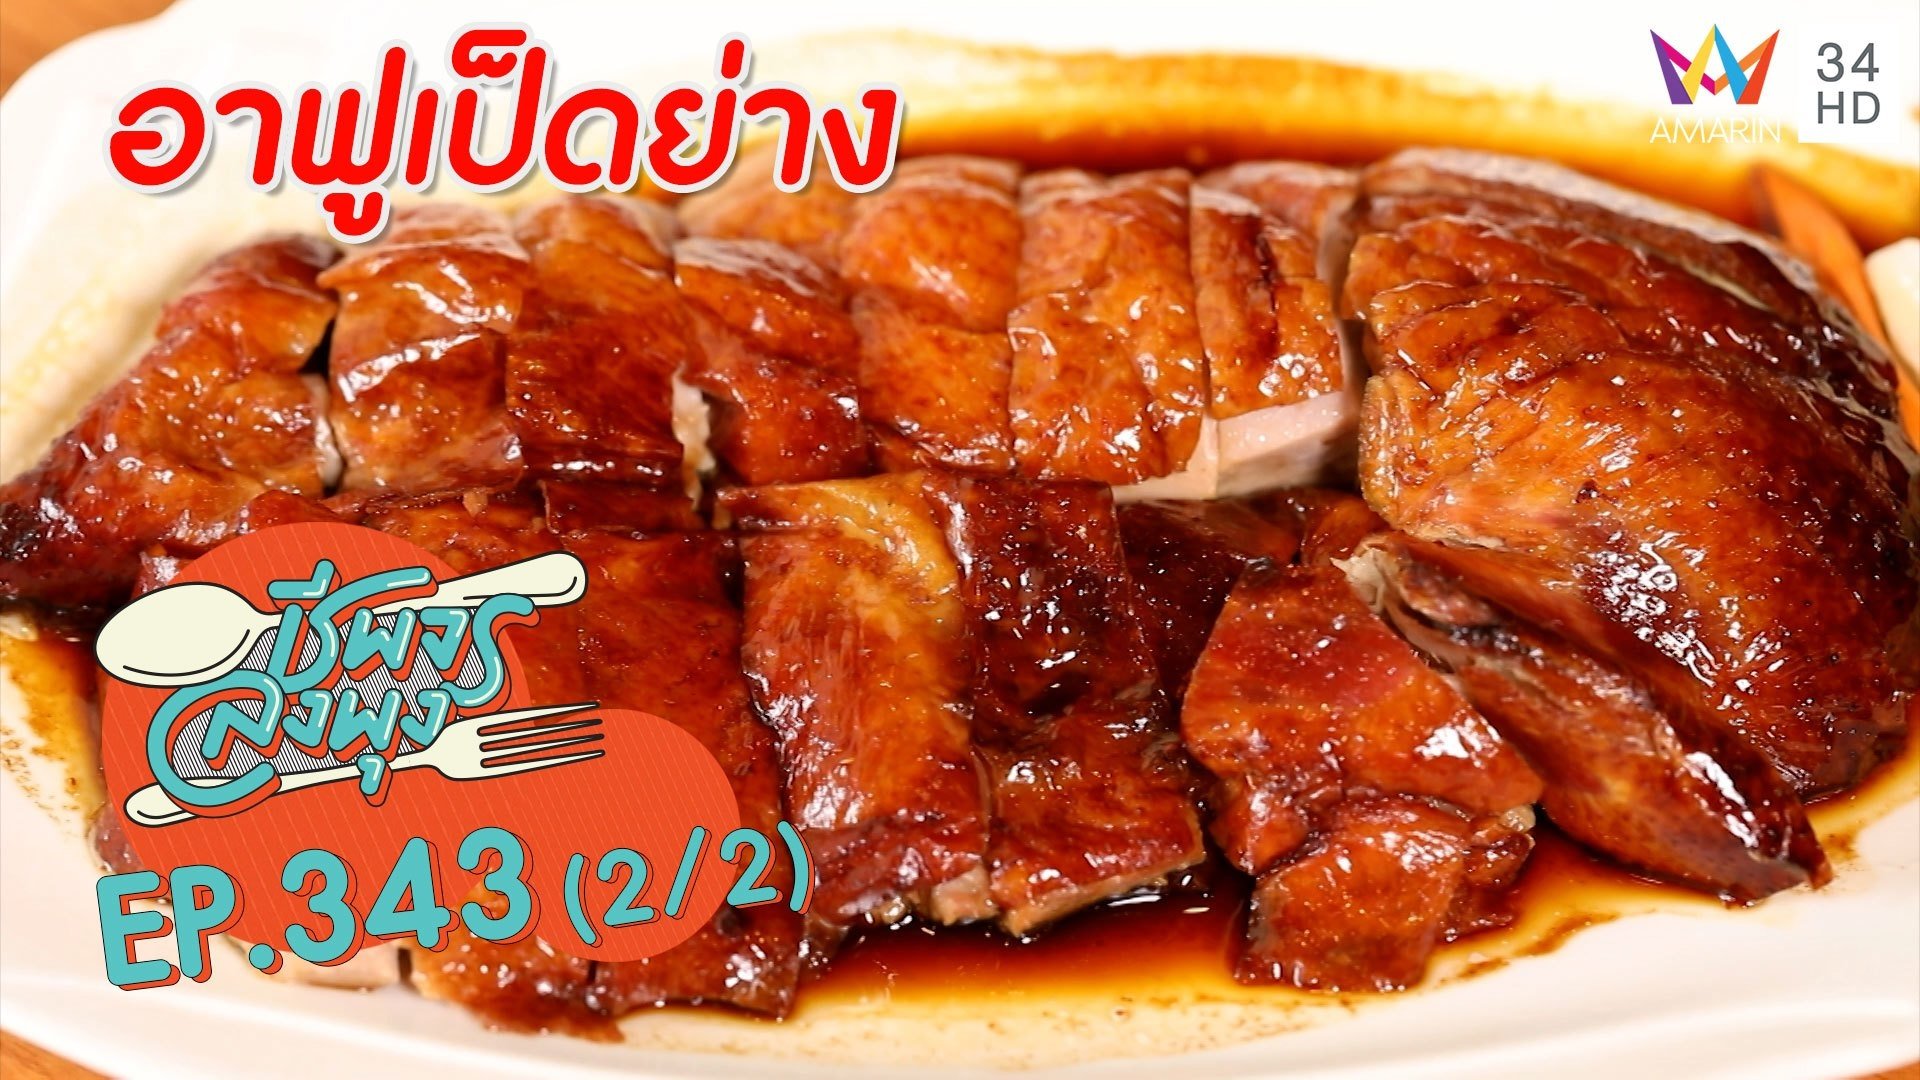 เป็ดย่างฮ่องกง เนื้อนุ่มฉ่ำ รสชาติเข้มข้น @ ร้านอาฟูเป็ดย่าง | ชีพจรลงพุง | 20 พ.ย. 64 (2/2) | AMARIN TVHD34